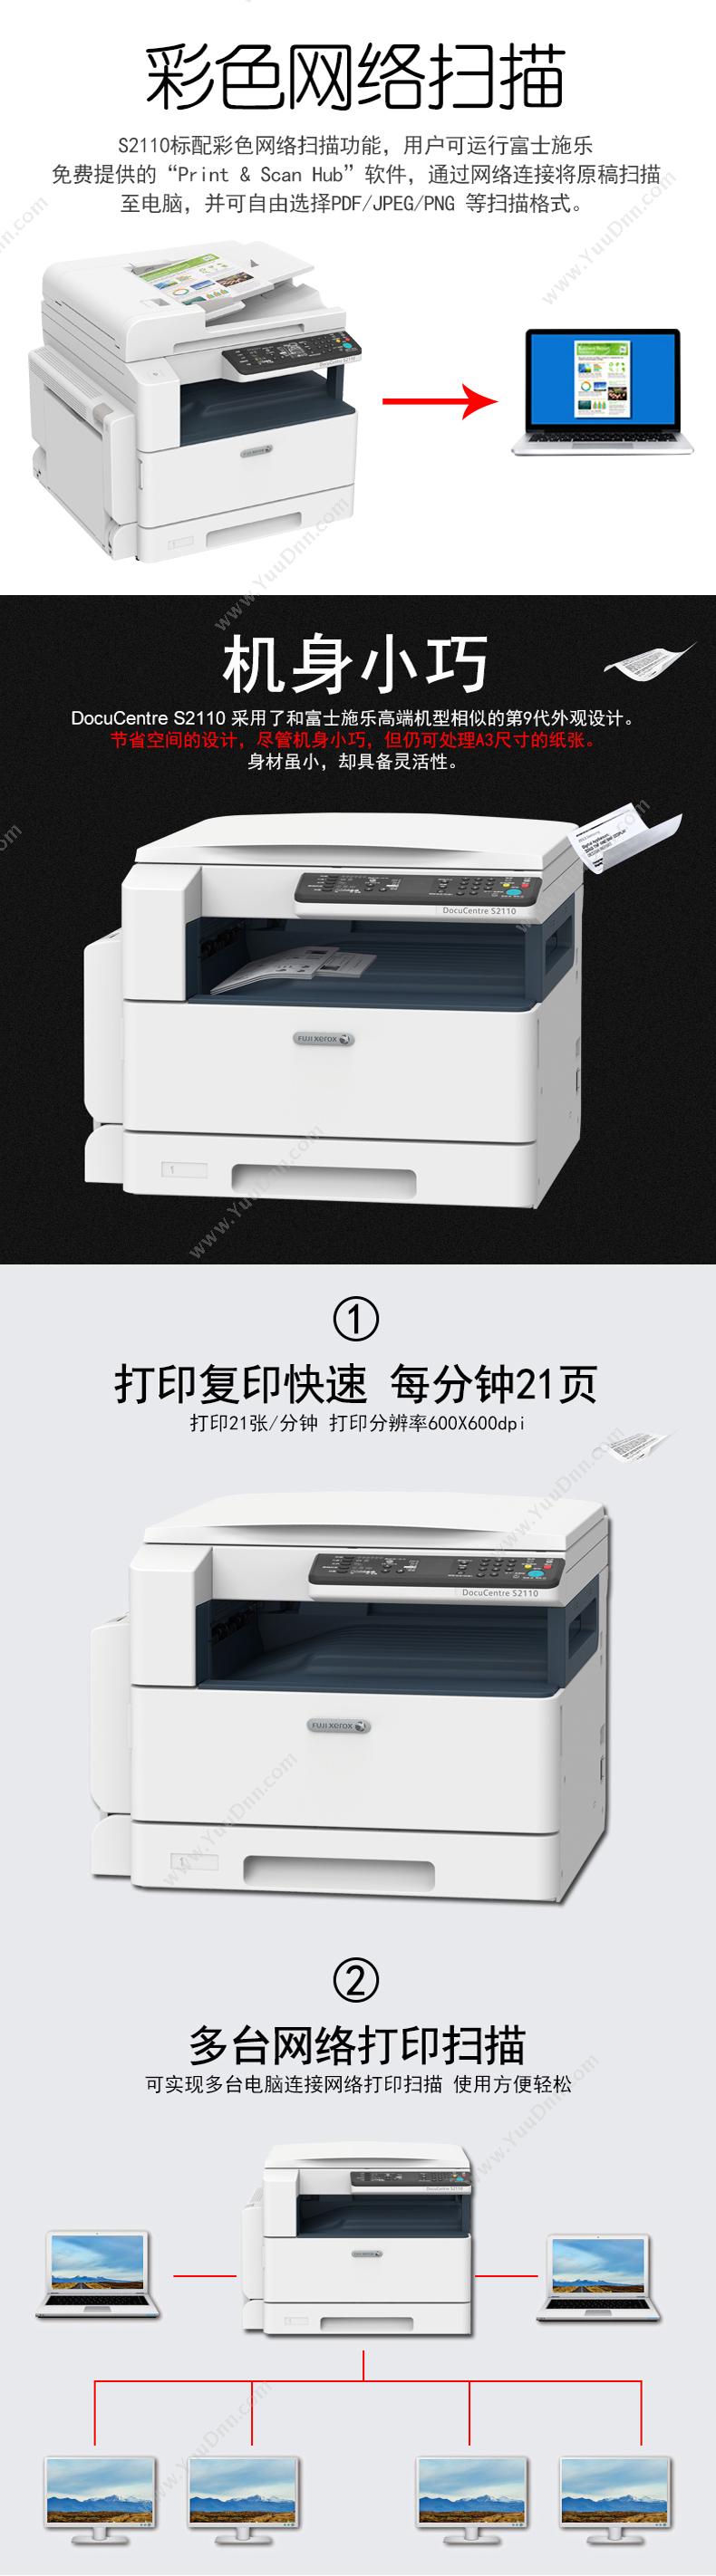 富士施乐 FujiXerox DC S2110N (黑白)复印机 标配1纸盒， 黑白低速数码复合机